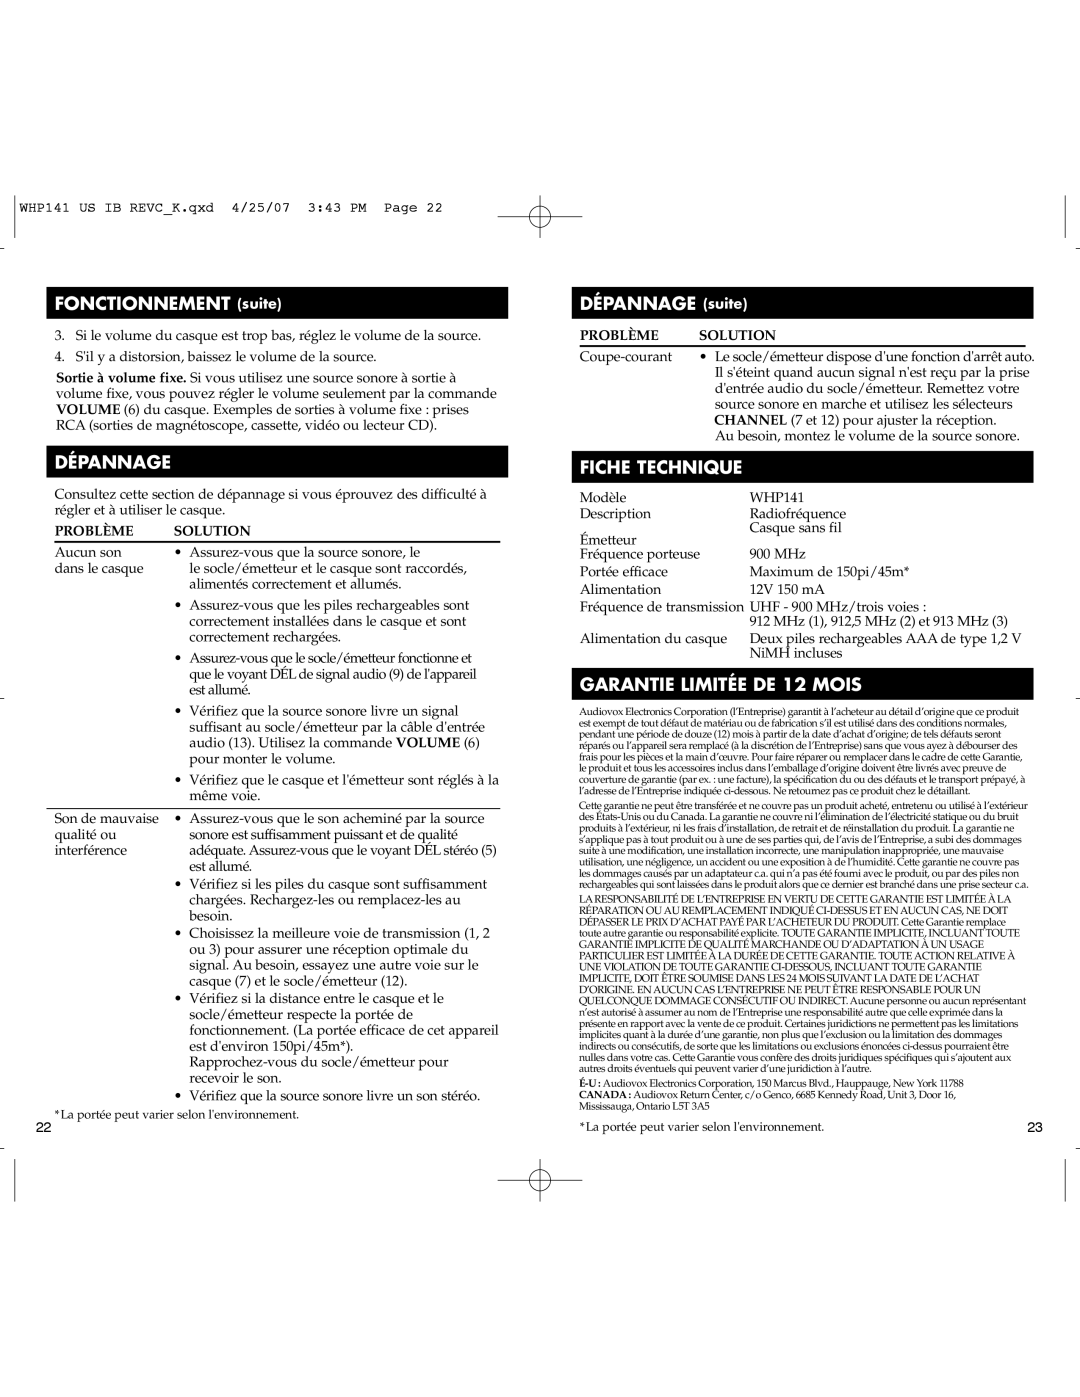 RCA WHP141 manual FONCTIONNEMENT suite, Dépannage, DÉPANNAGE suite, Fiche Technique, GARANTIE LIMITÉE DE 12 MOIS, Problème 